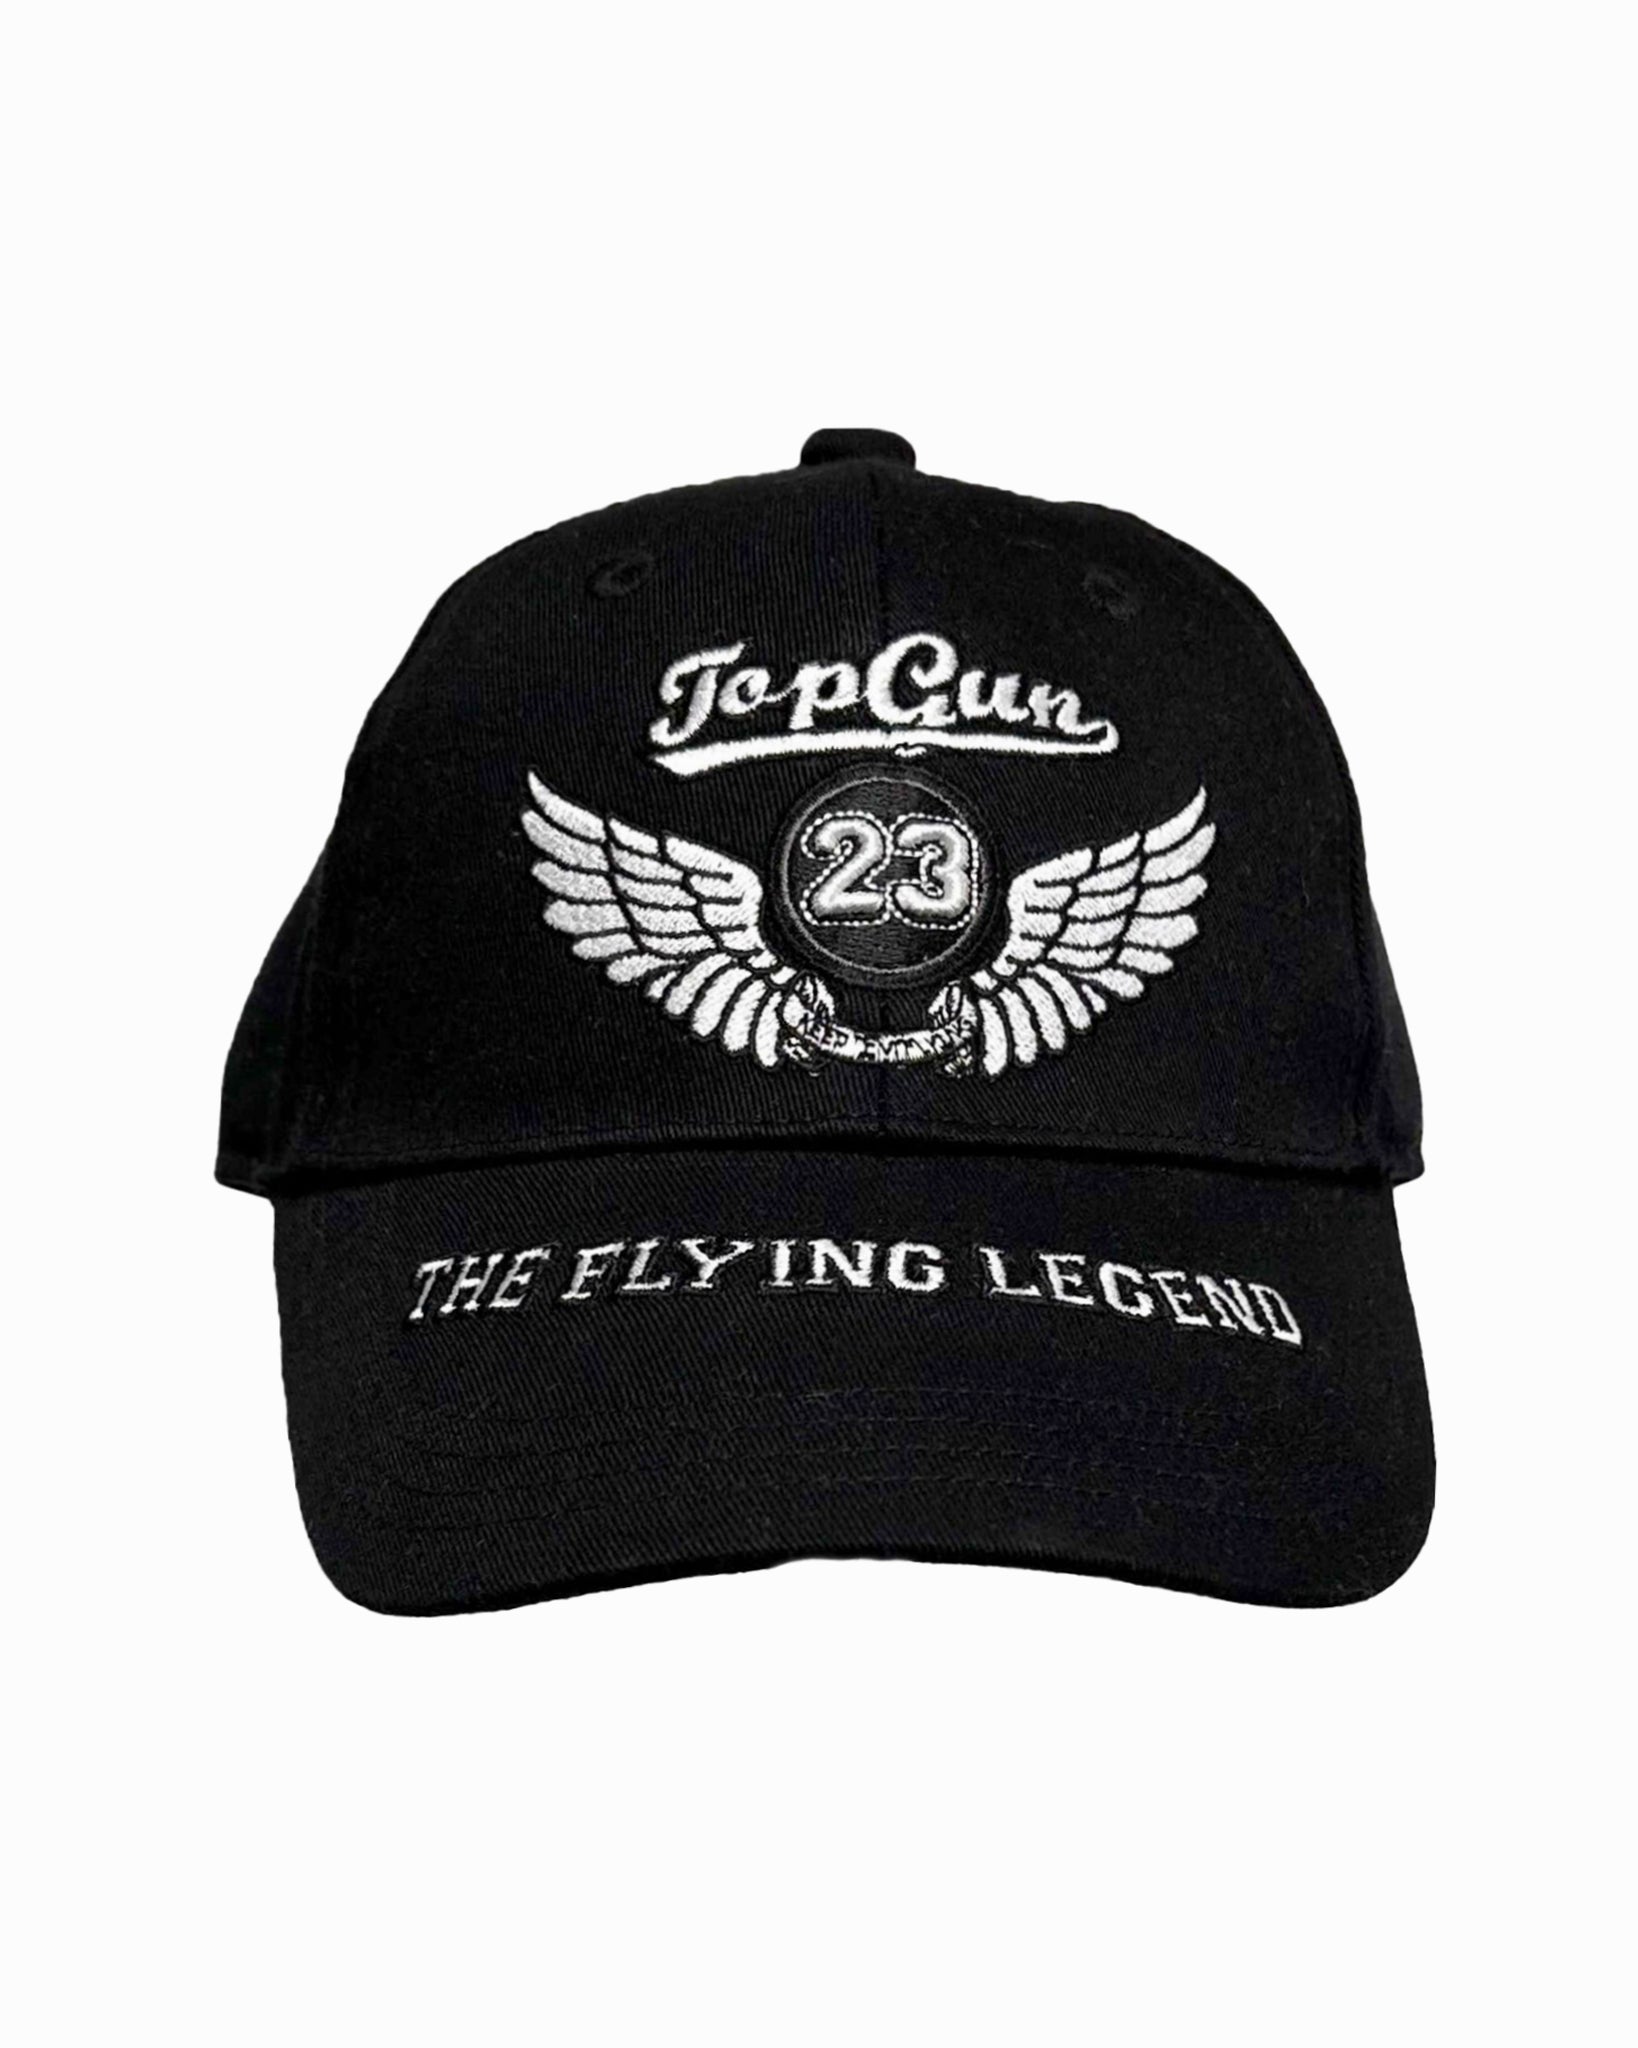 TOP GUN® "THE FLYING LEGEND" CAP